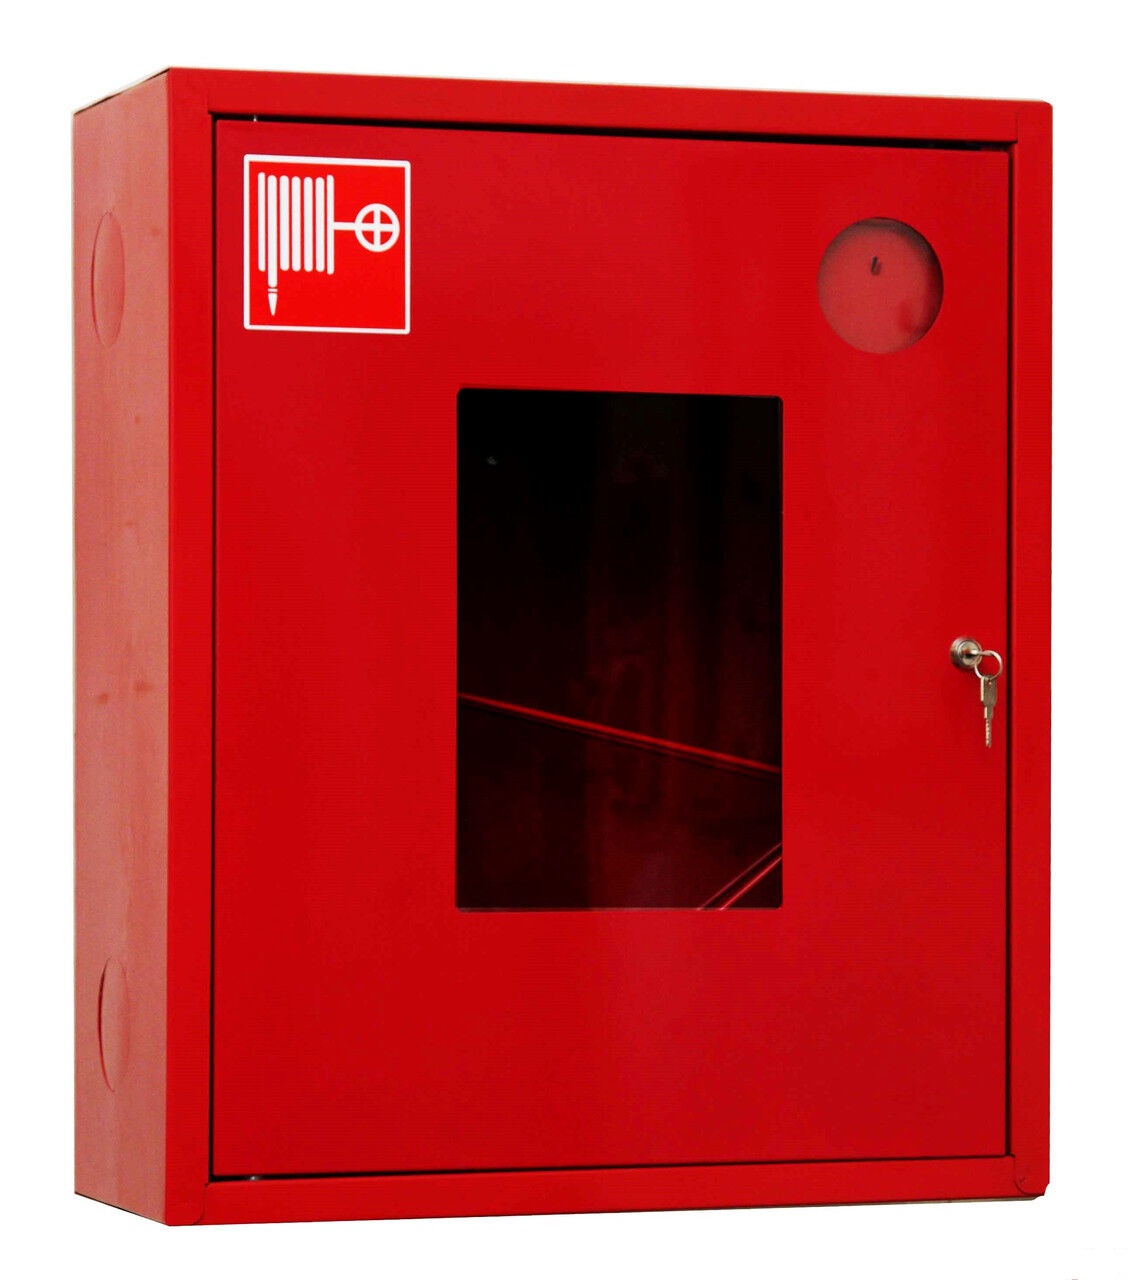 Пожарный кран в помещении. Шкаф пожарный ШПК-310н. Шкаф пожарный ШПК-310 НОК. Шкаф пожарный ШПК-310 НОБ. Шкаф пожарный ШПК-01 (ШПК-310) НОК (навесной, открытый, красный).